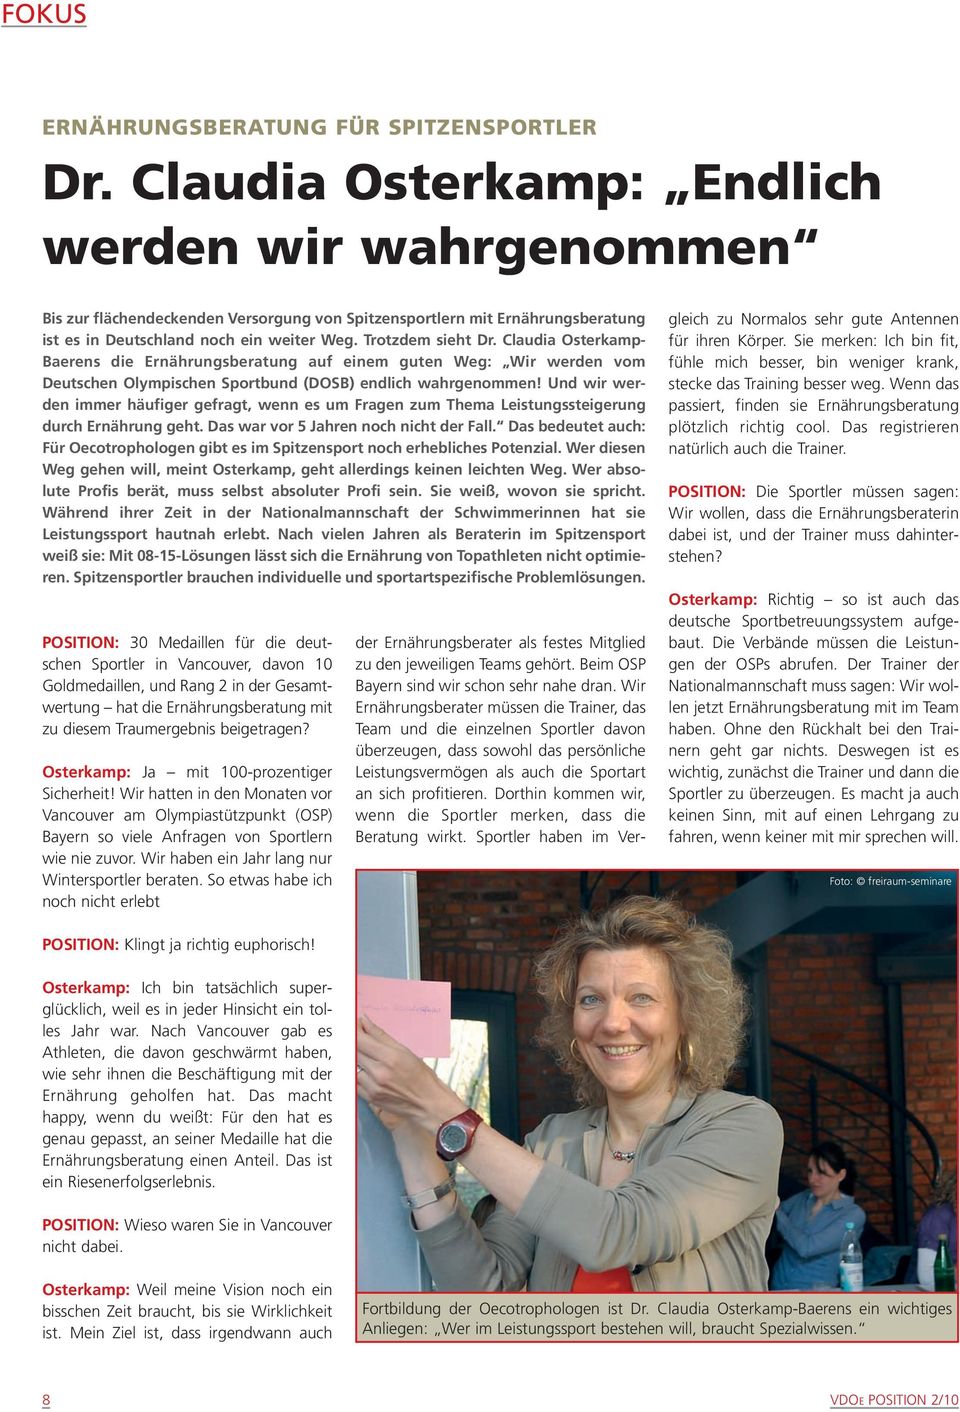 Claudia Osterkamp- Baerens die Ernährungsberatung auf einem guten Weg: Wir werden vom Deutschen Olympischen Sportbund (DOSB) endlich wahrgenommen!